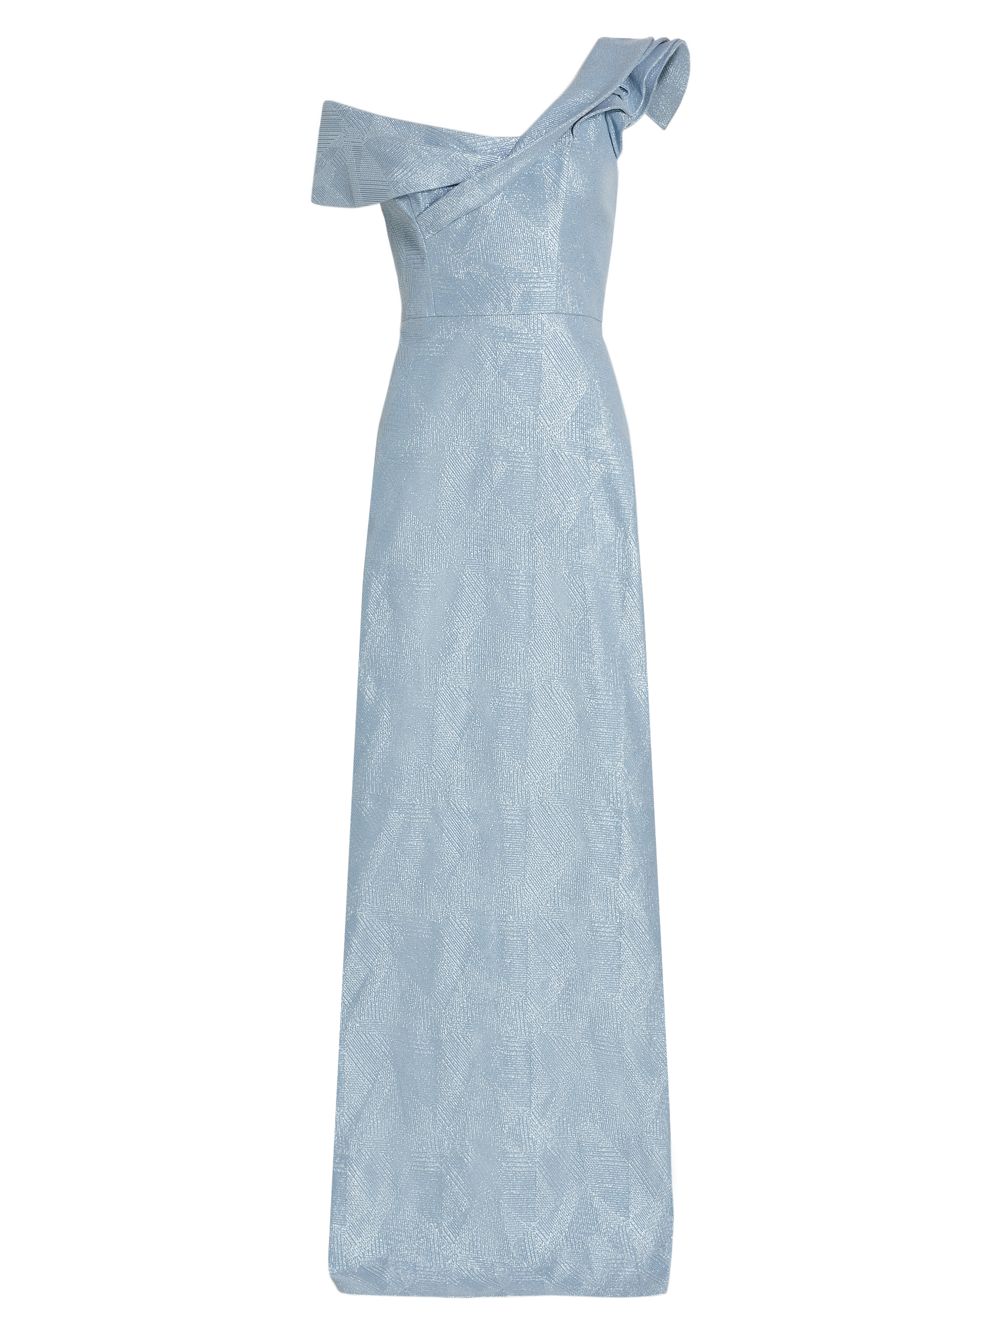 Двухслойное жаккардовое платье с оборками на одно плечо Teri Jon by Rickie Freeman, синий